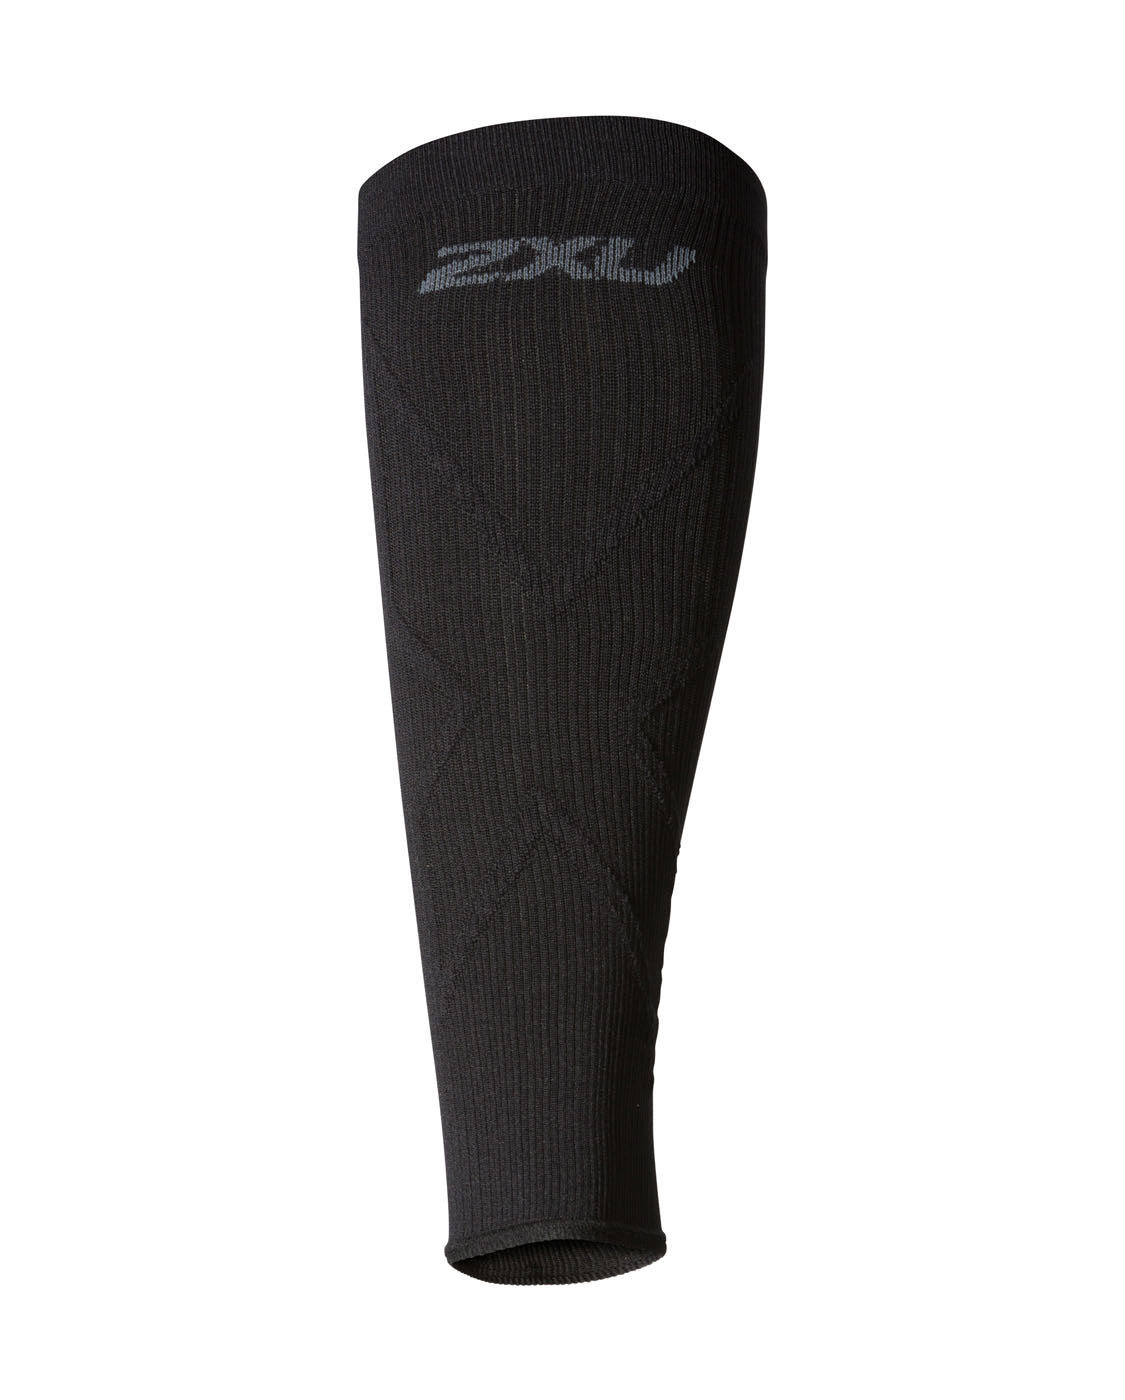 Flex Compression Arm Sleeves – 2XU